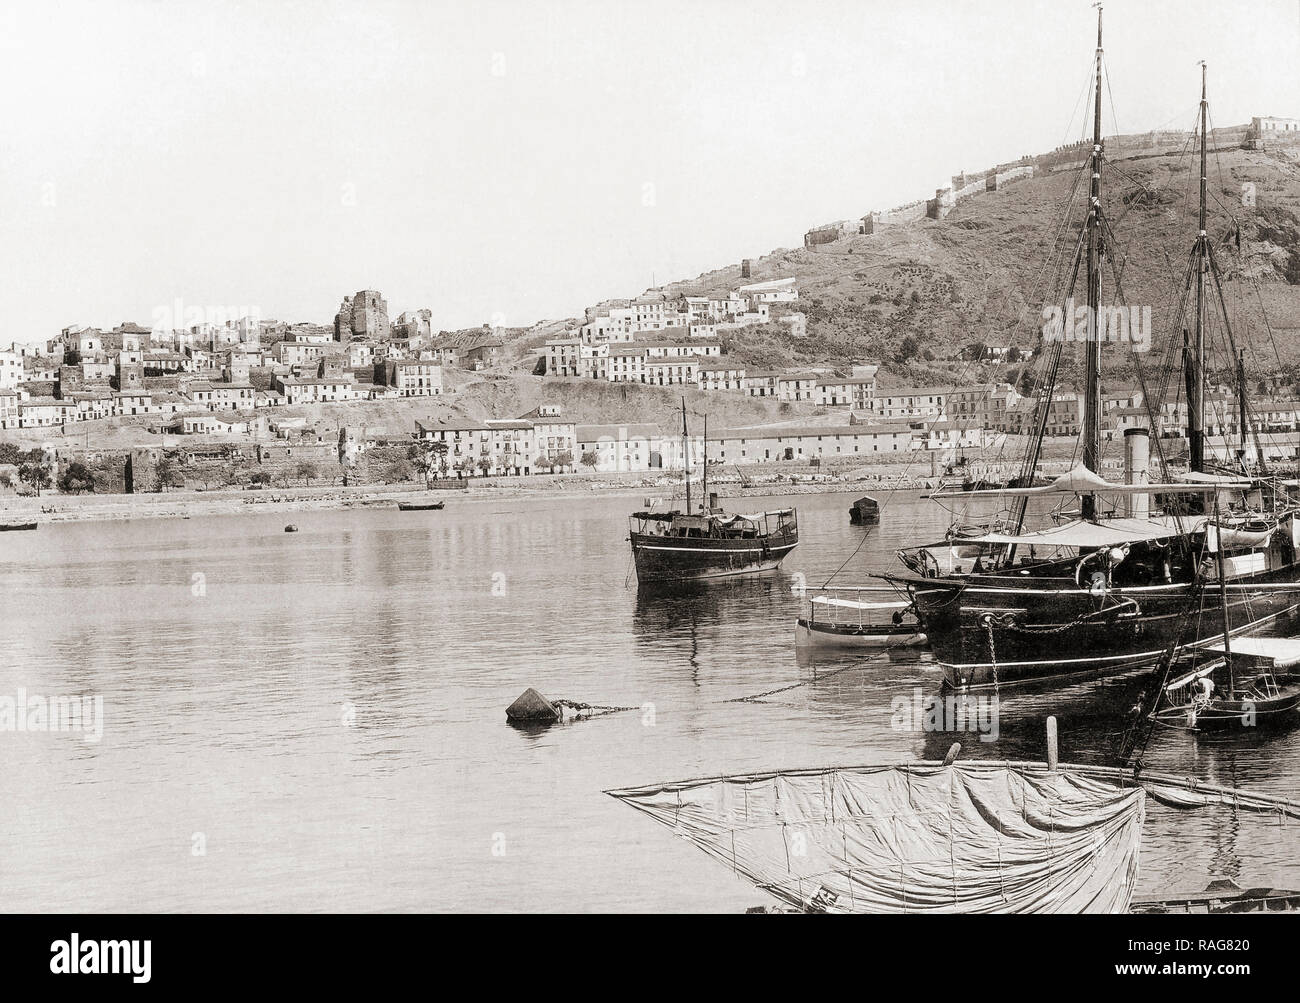 Malaga, Provinz Malaga, Spanien. Der Hafen von Malaga im Jahr 1890 mit den Ruinen der Festung Alcazaba im Hintergrund. Stockfoto